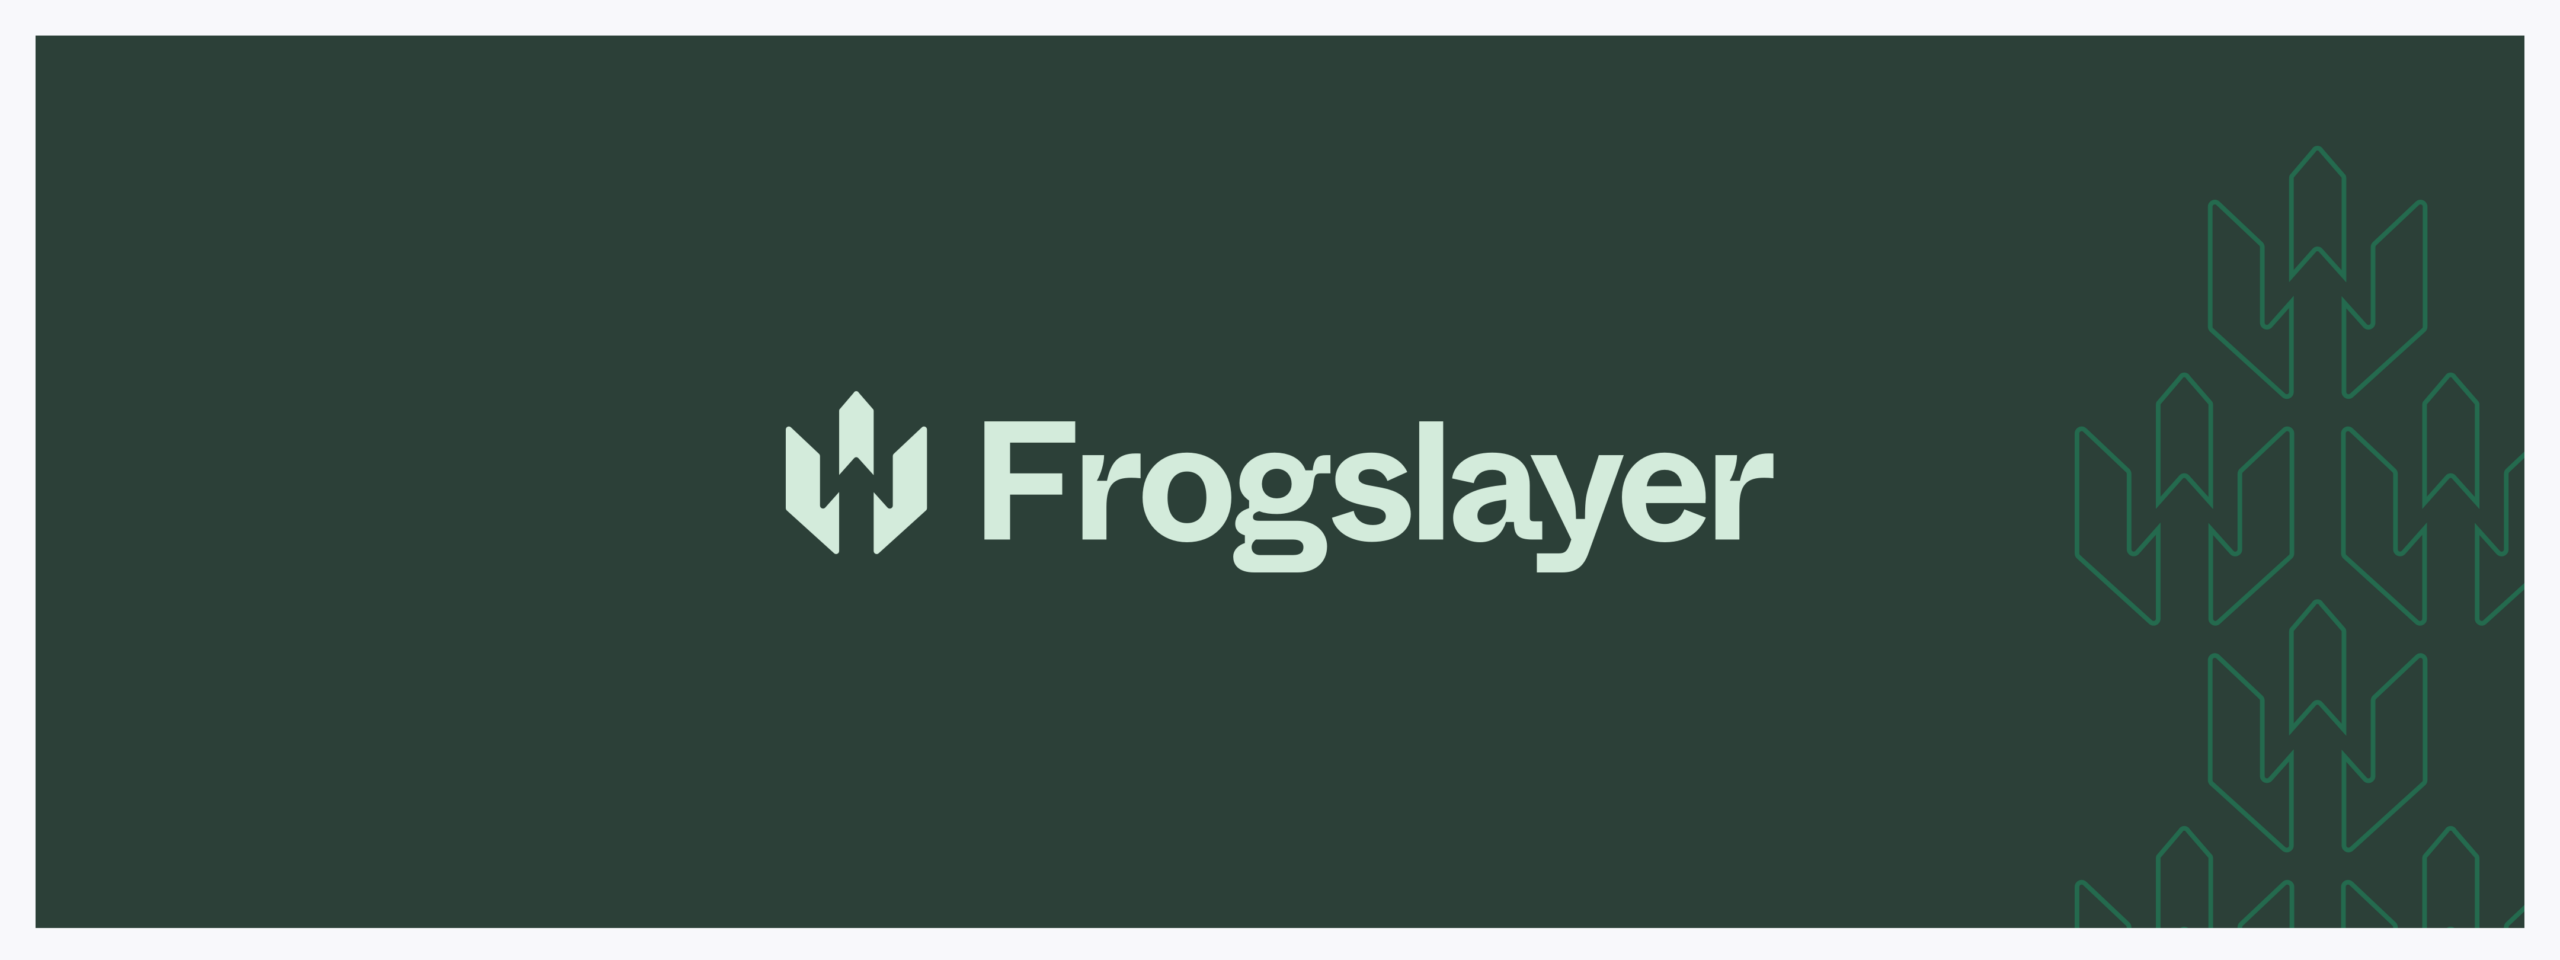 Frogslayer Hero Image